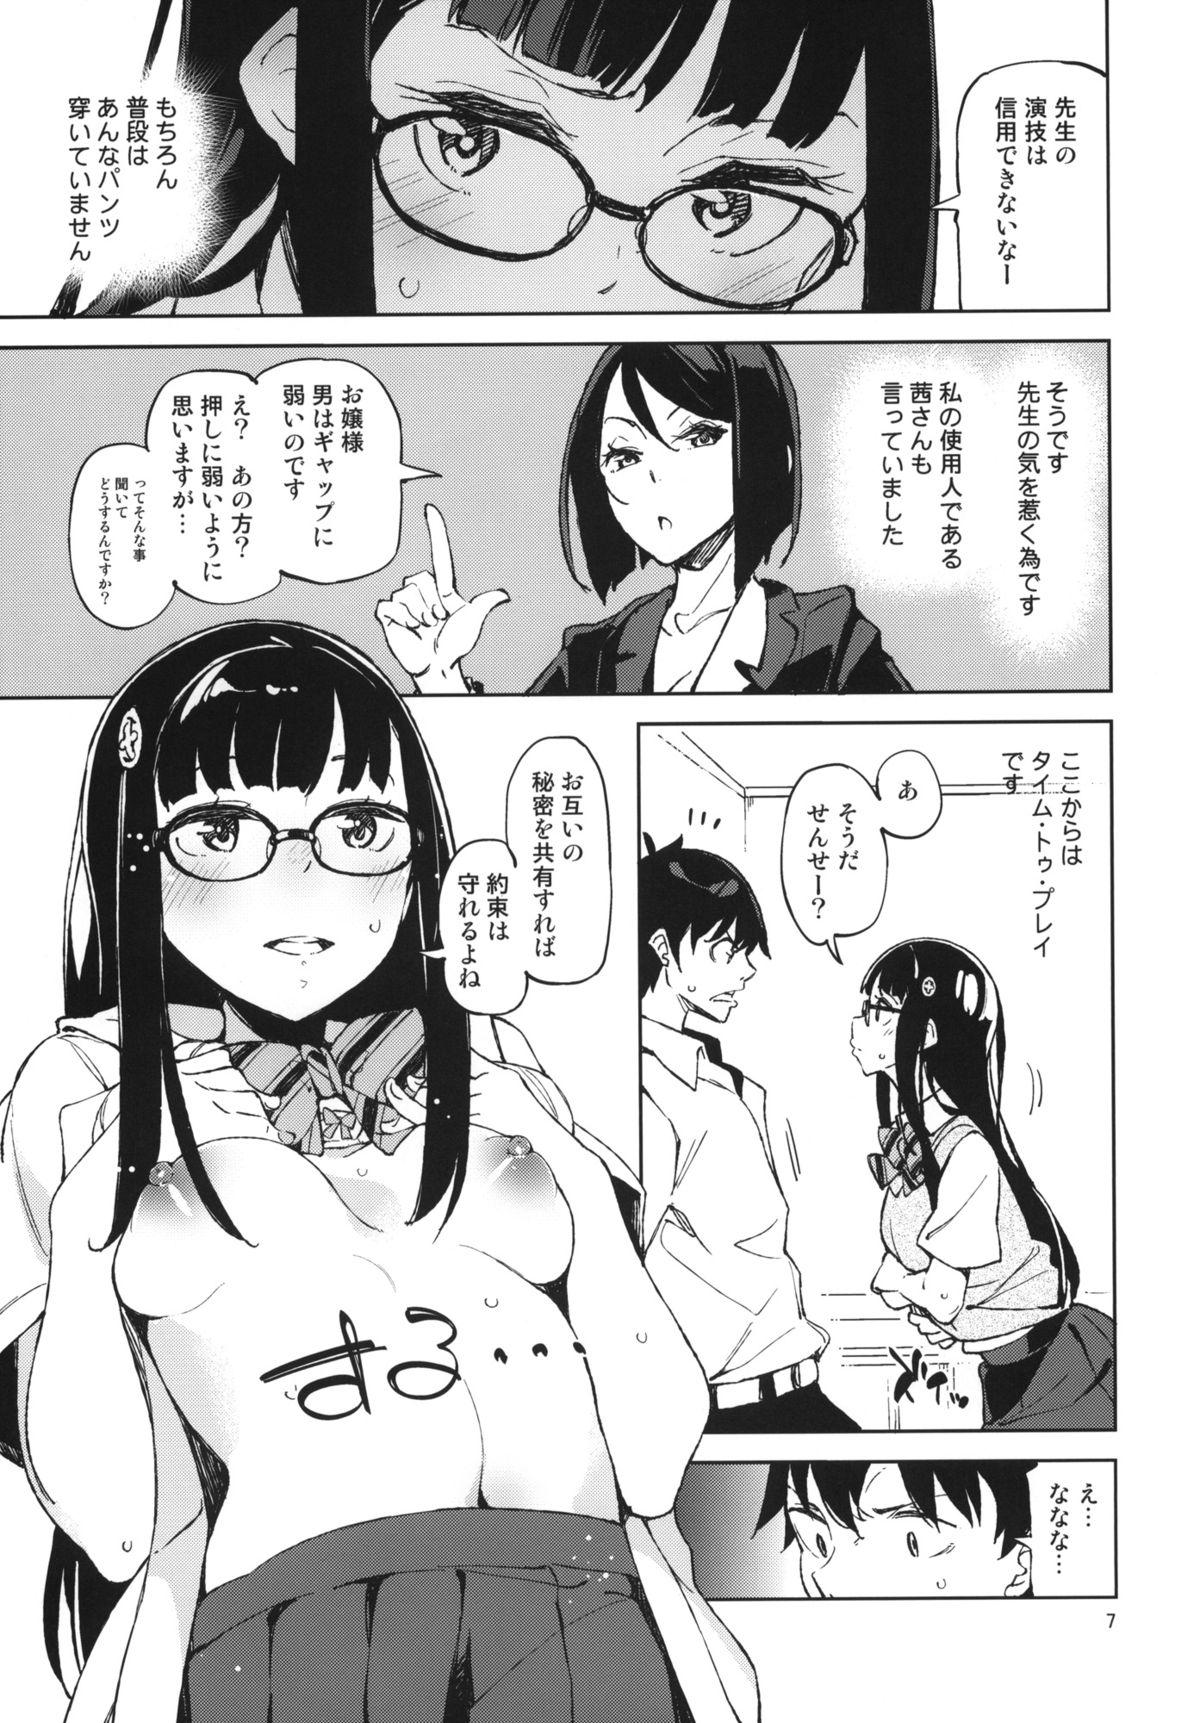 Chastity Pony - Danshi koukousei de urekko light novel sakka o shiteiru keredo Rubdown - Page 6